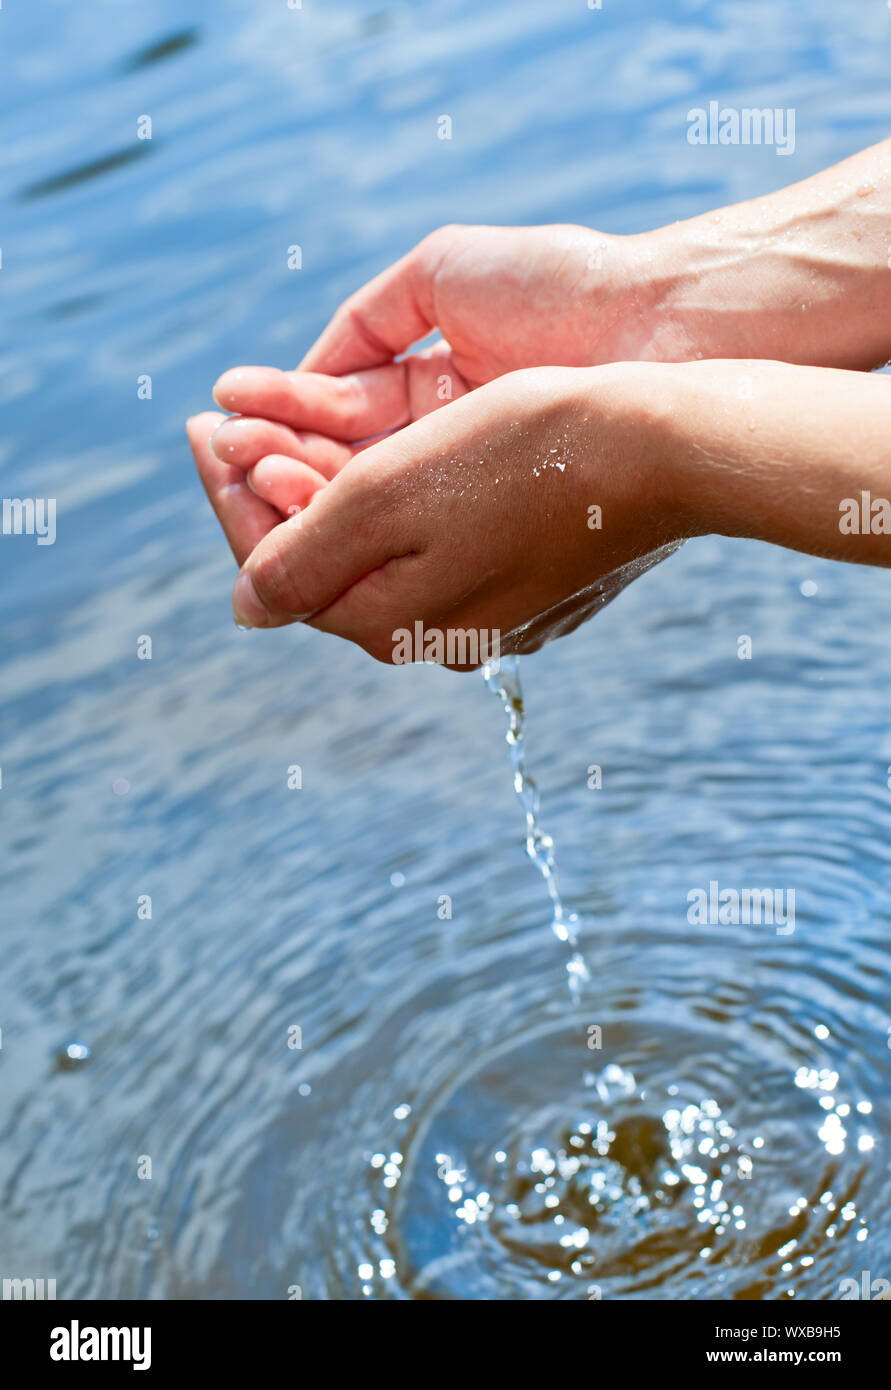 Рис держит воду. Вода в ладонях. Вода в руках. Рука из воды. Руки ладонями в воде.